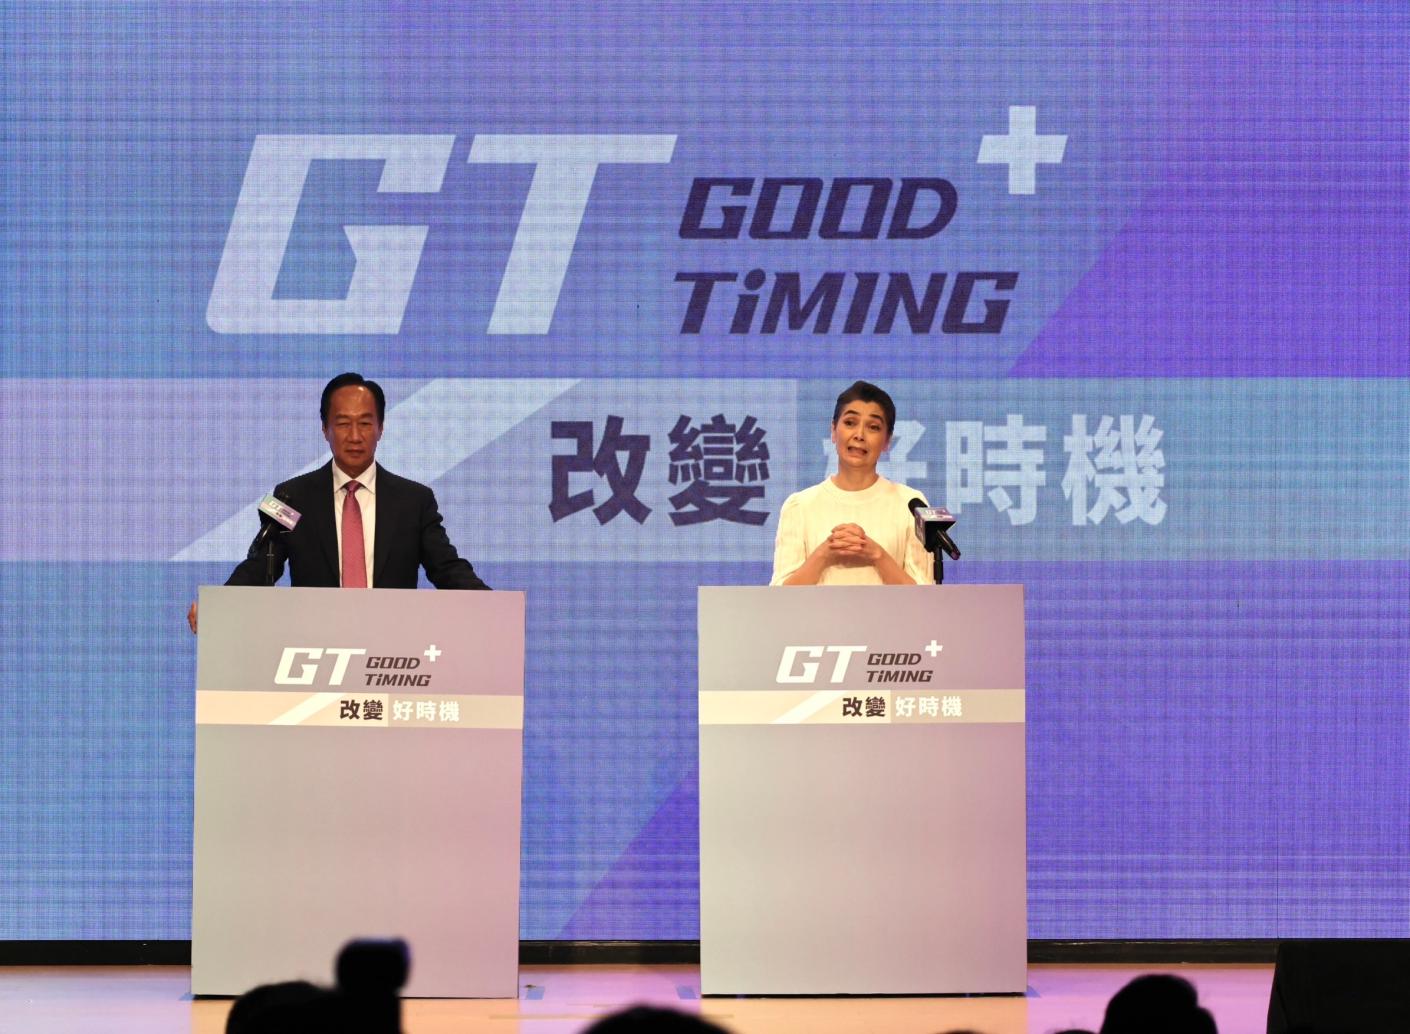 獨立參選總統的鴻海創辦人郭台銘(左)今天宣布副手為資深藝人賴佩霞(右)。林啟弘攝